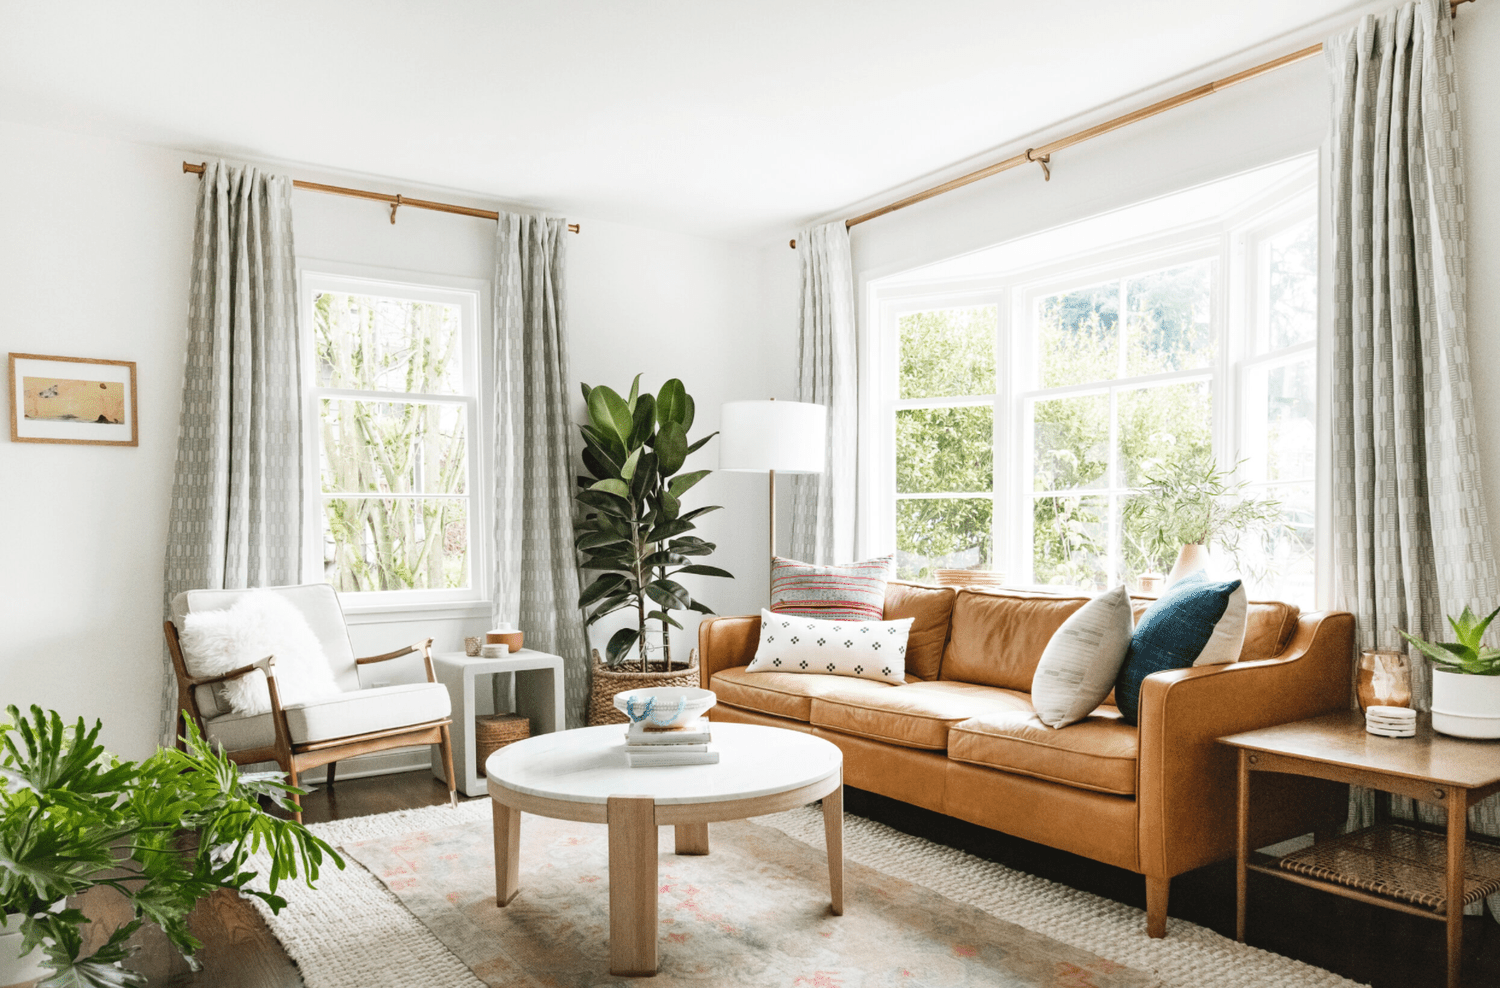 Ein Wohnzimmer mit einem Couchtisch, einem Sessel und einem Ledersofa, das so breit ist wie das riesige Erkerfenster des Raumes